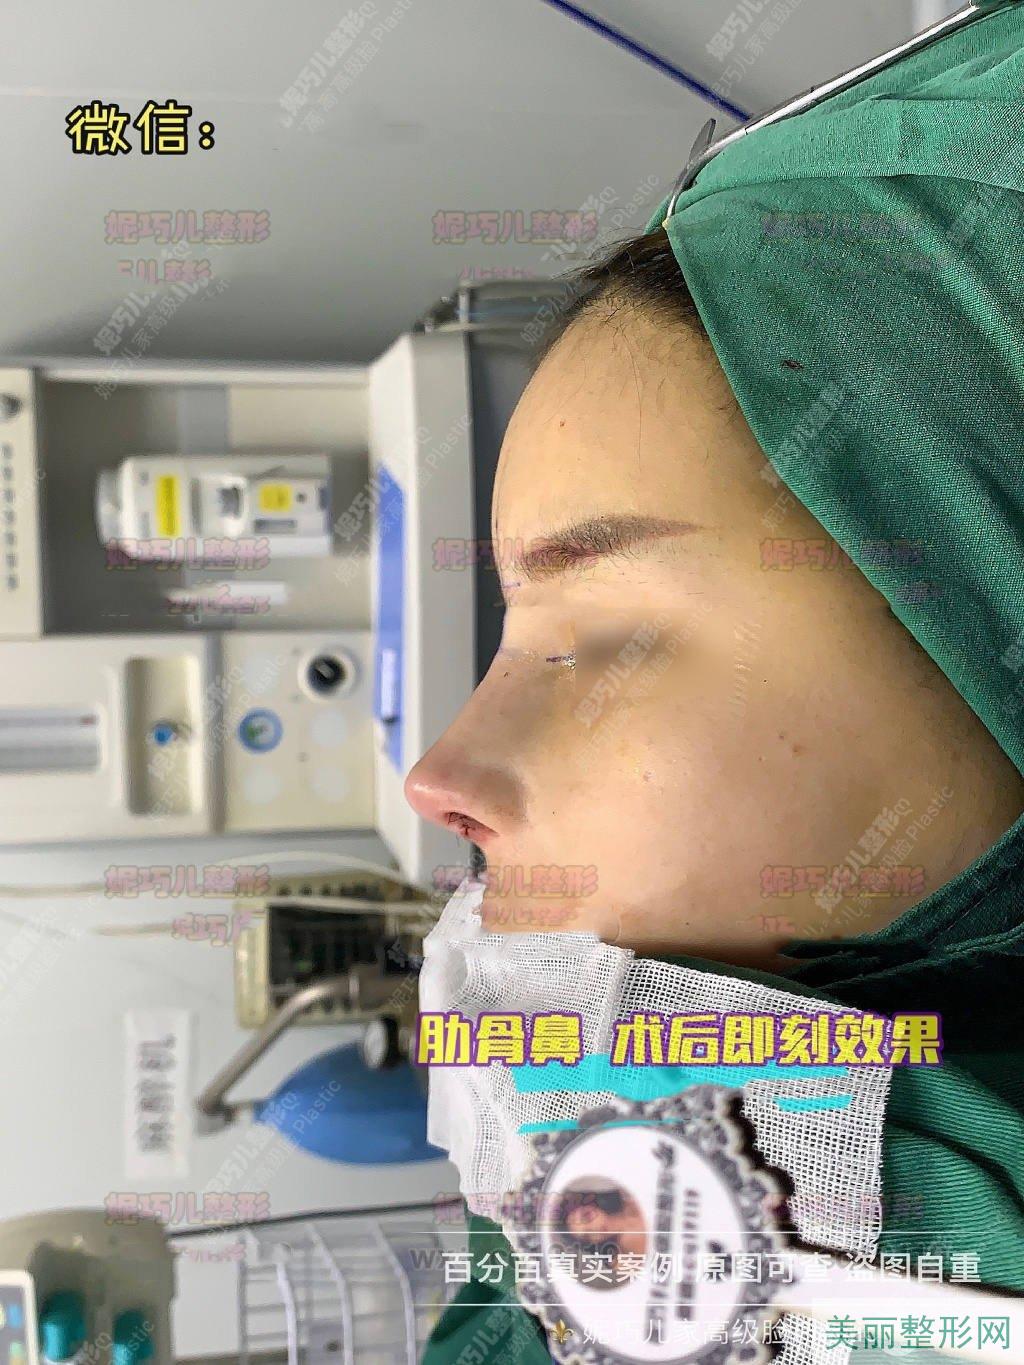 上海妮巧儿医疗美容整形医院芭比肋软骨隆鼻案例图